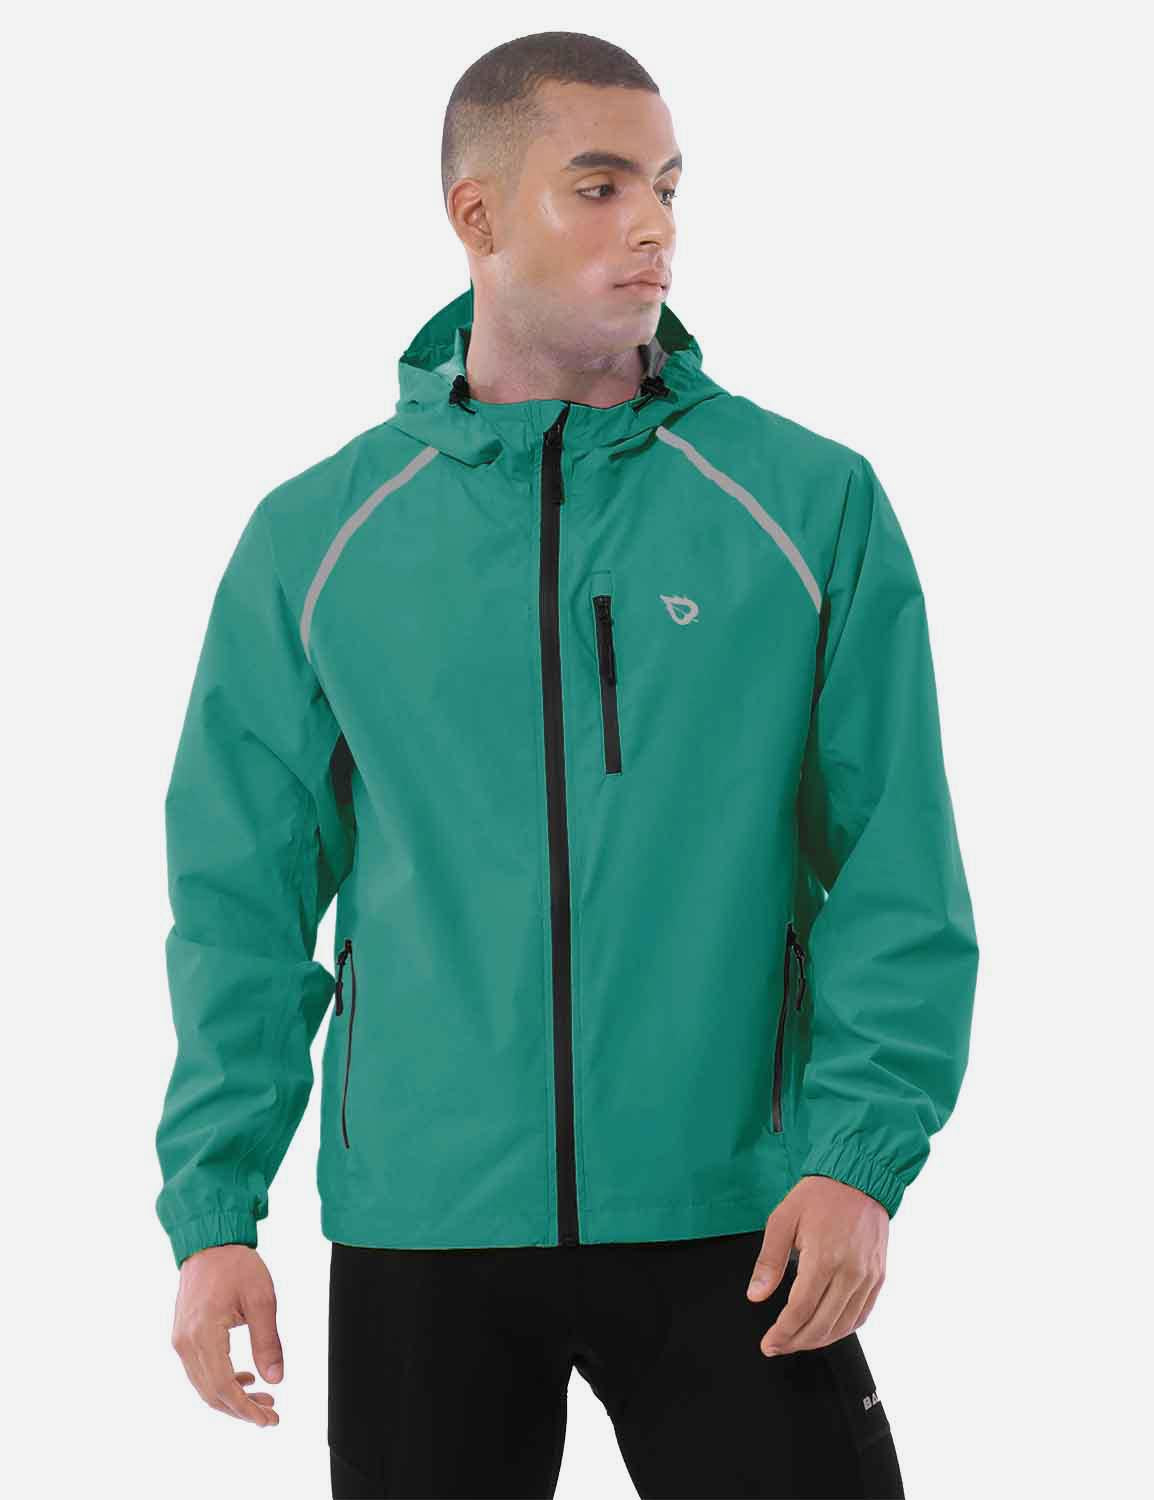 Baleaf Men's Fluorescent Waterproof Packable Windbreaker Track Jacket aaa467 Teal Green Side